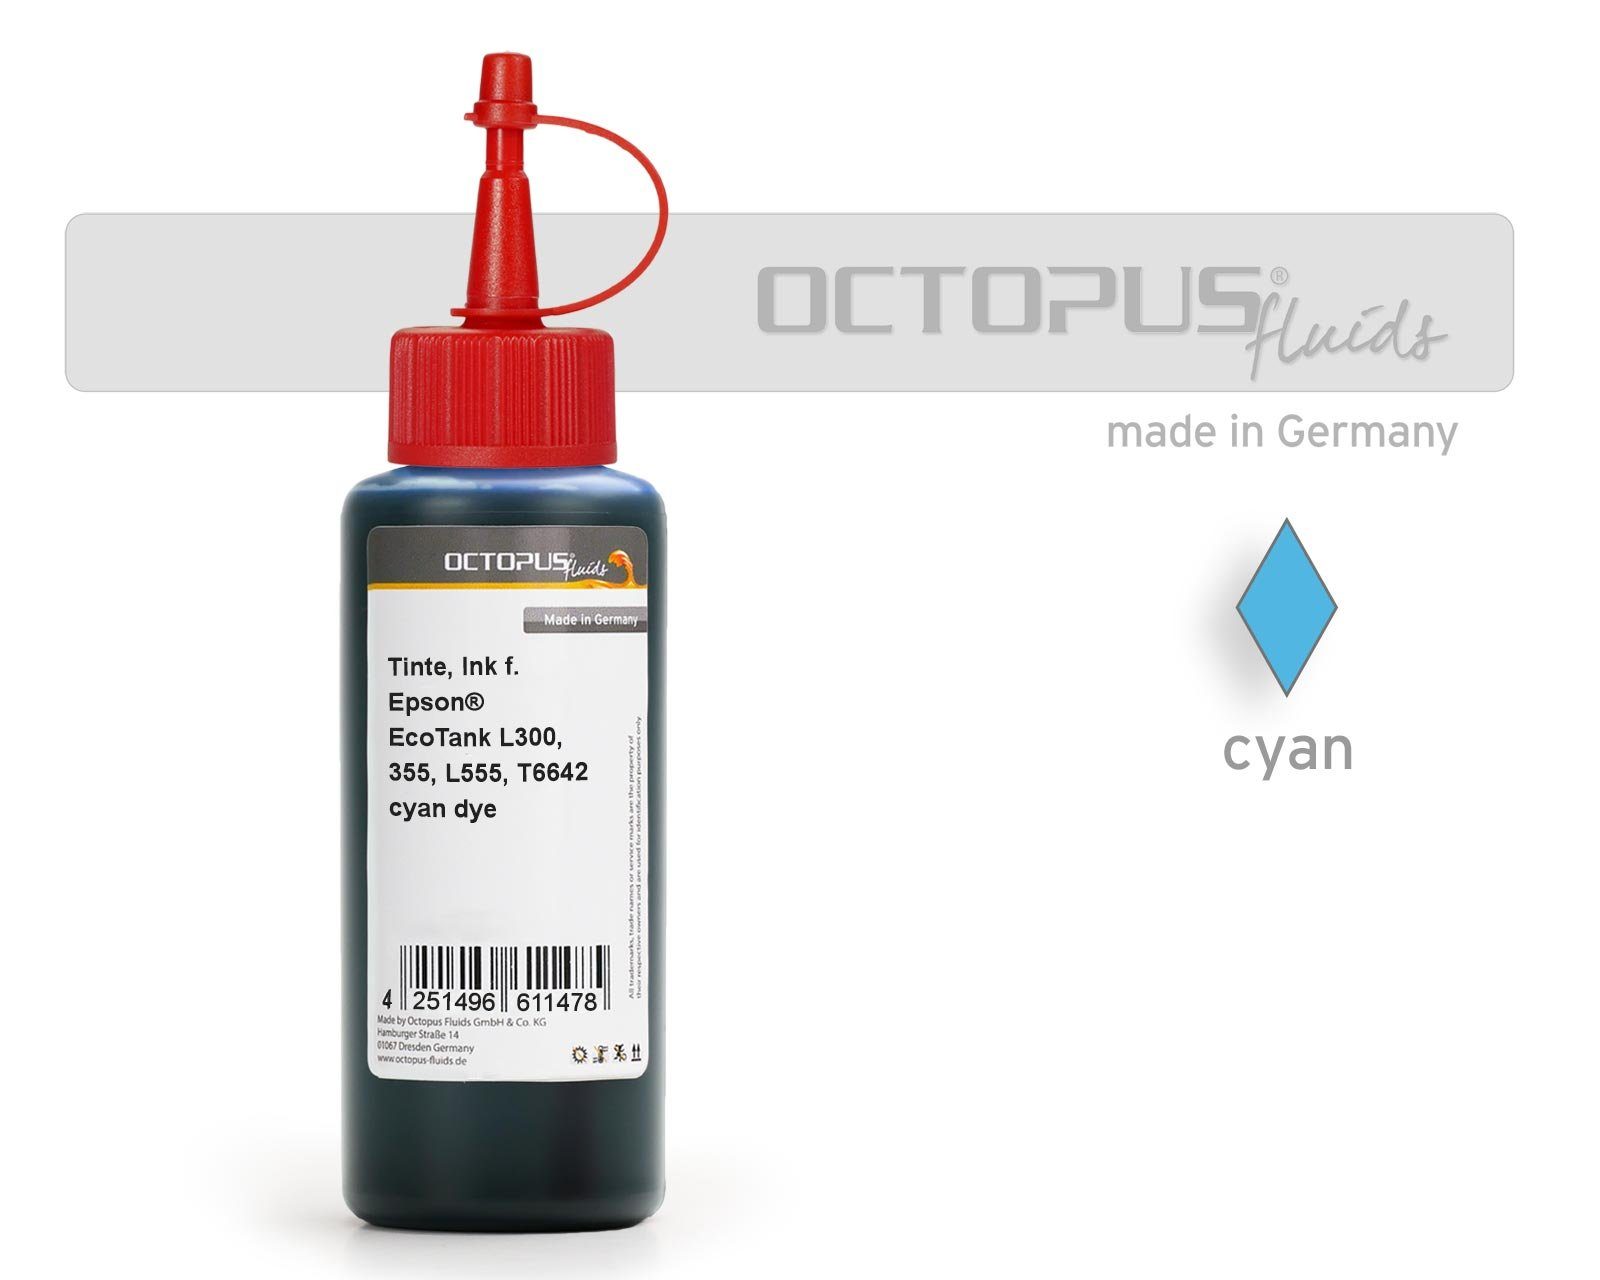 OCTOPUS Fluids Druckertinte Epson EcoTank L300, L355, L555 Drucker, T6642 cyan Nachfülltinte (für Epson, 1x 100 ml) Cyan 100ml